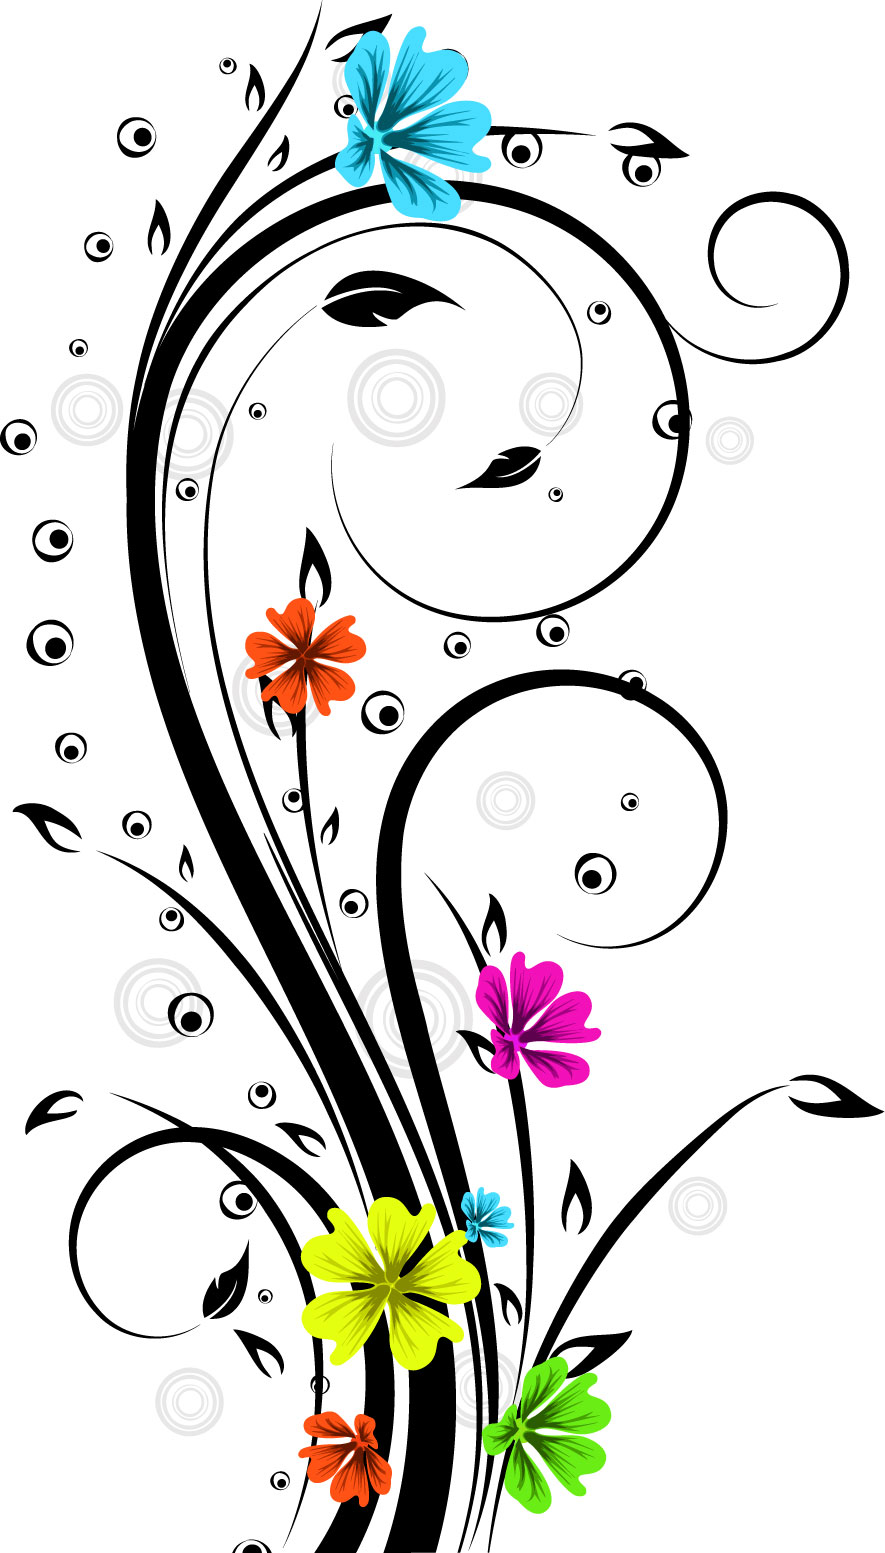 可愛い花のイラスト-カラフル・茎葉・蔓